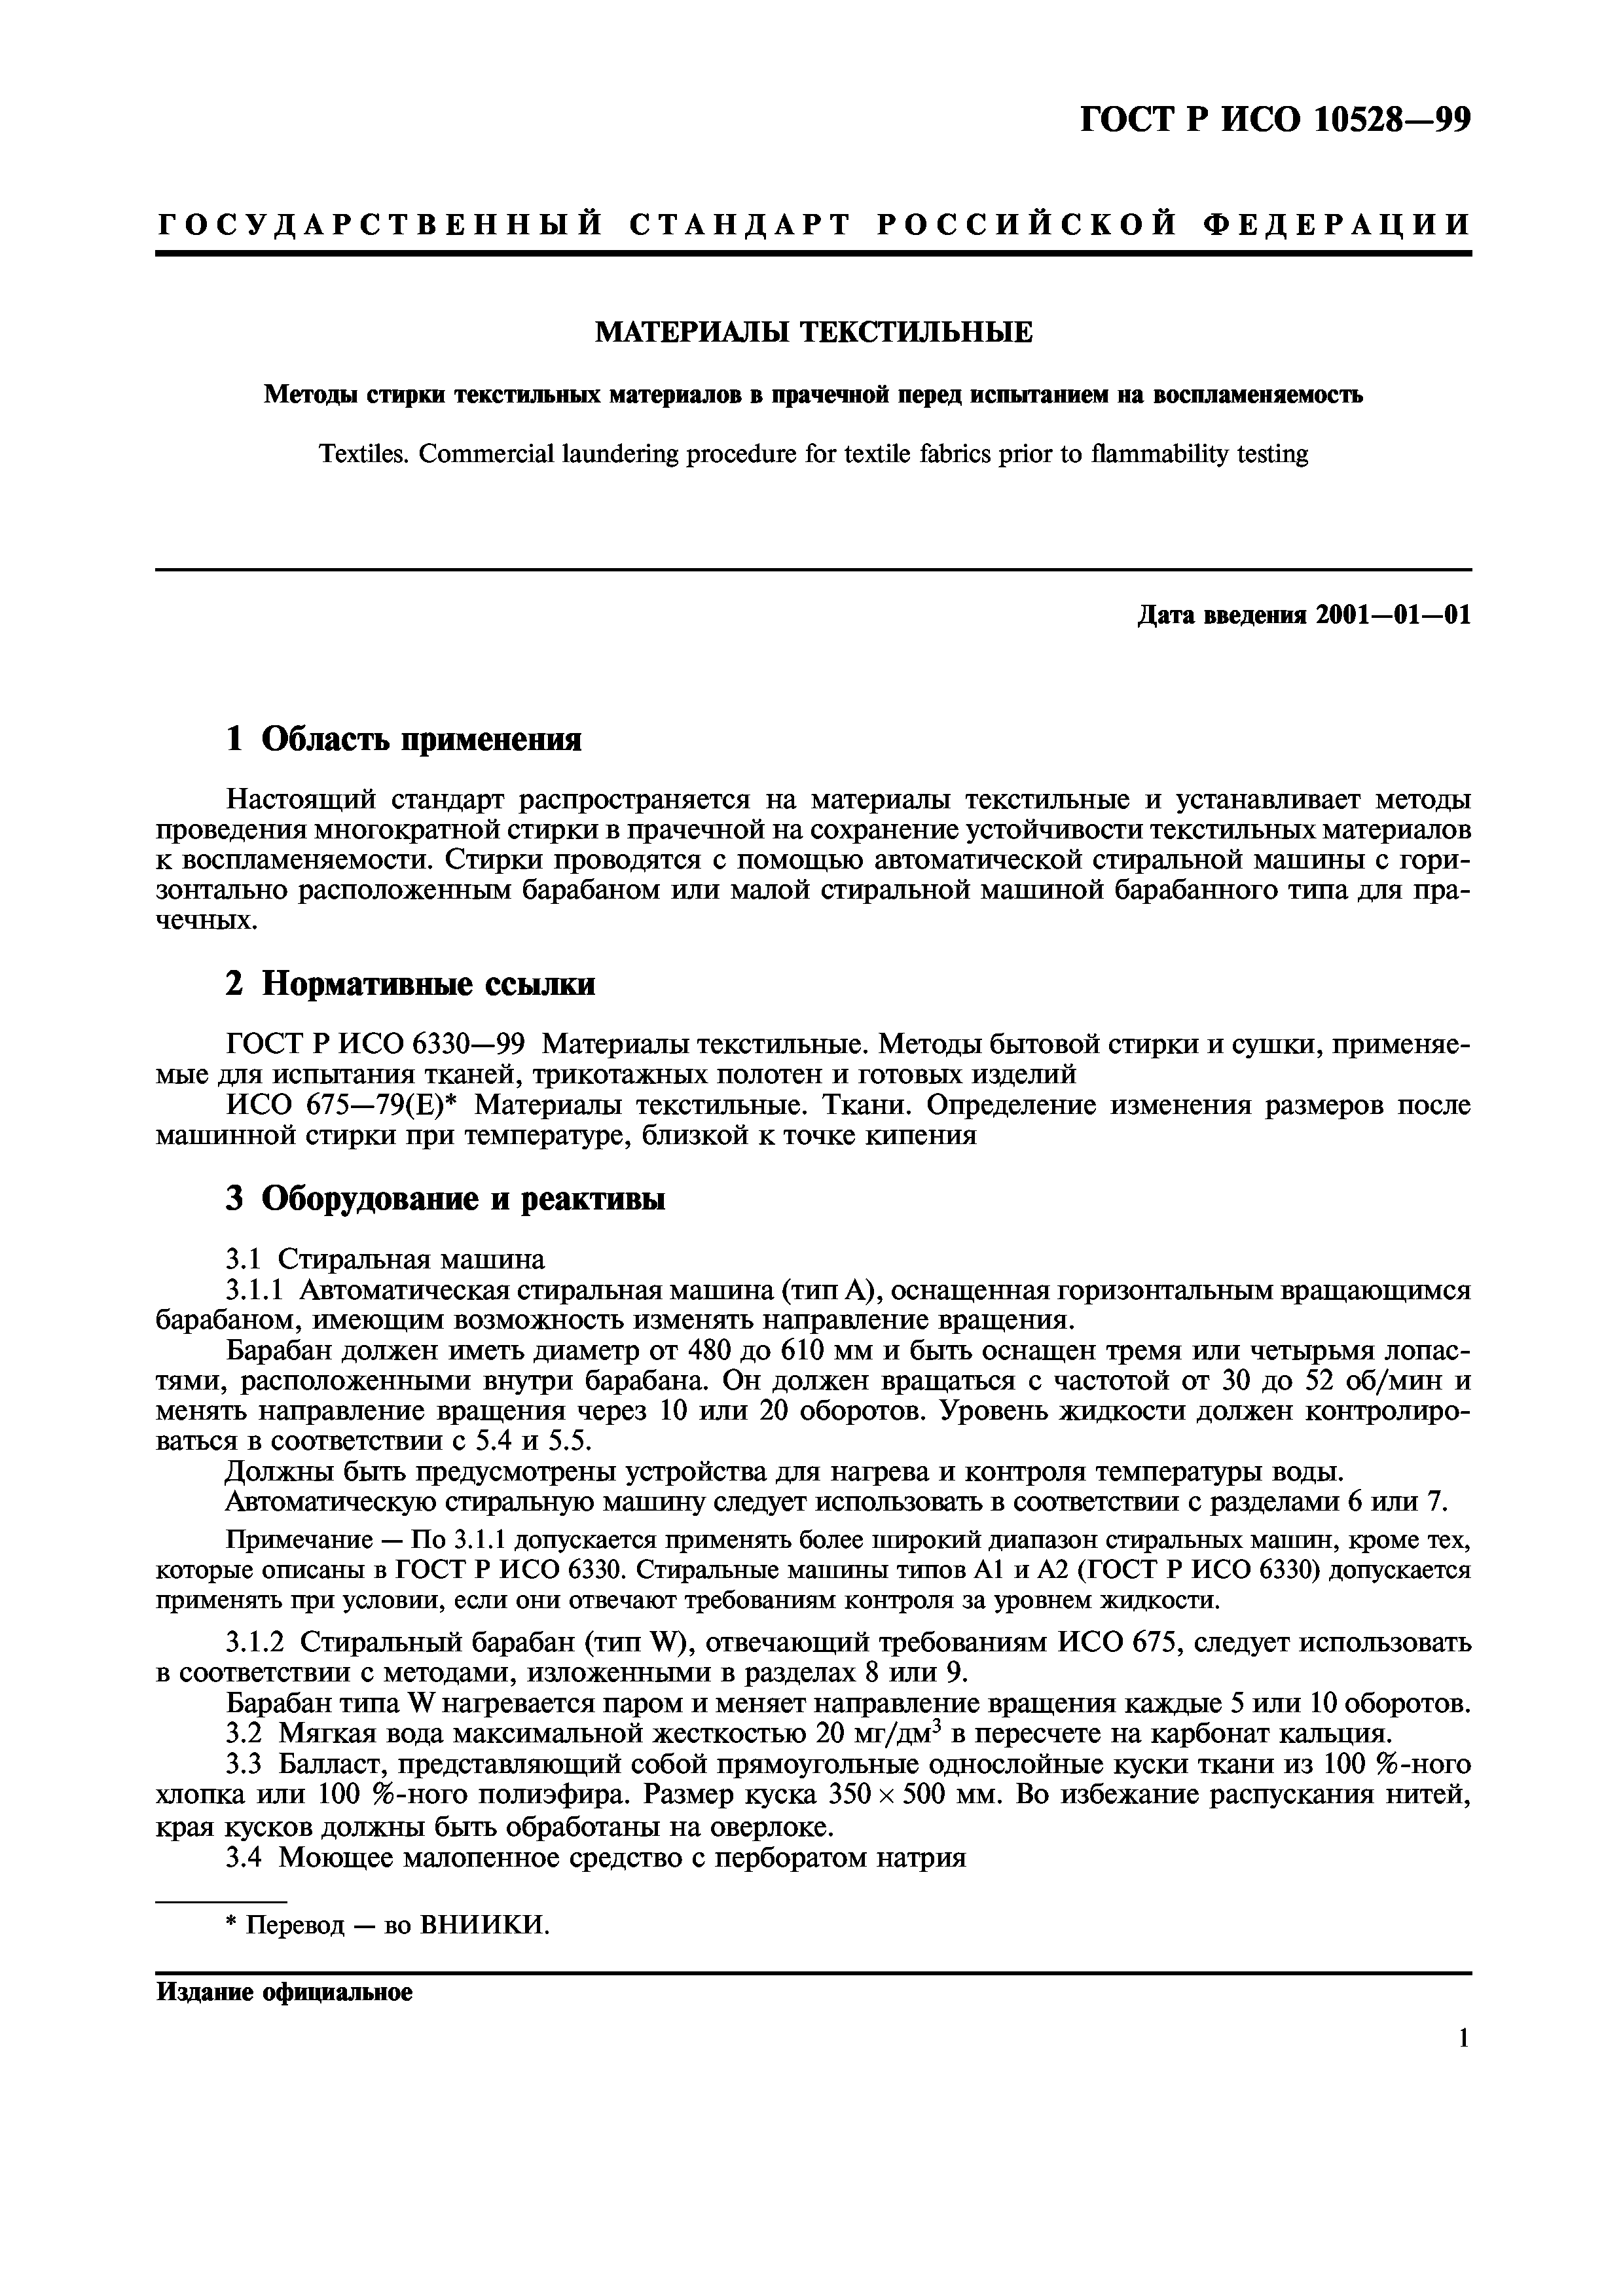 ГОСТ Р ИСО 10528-99